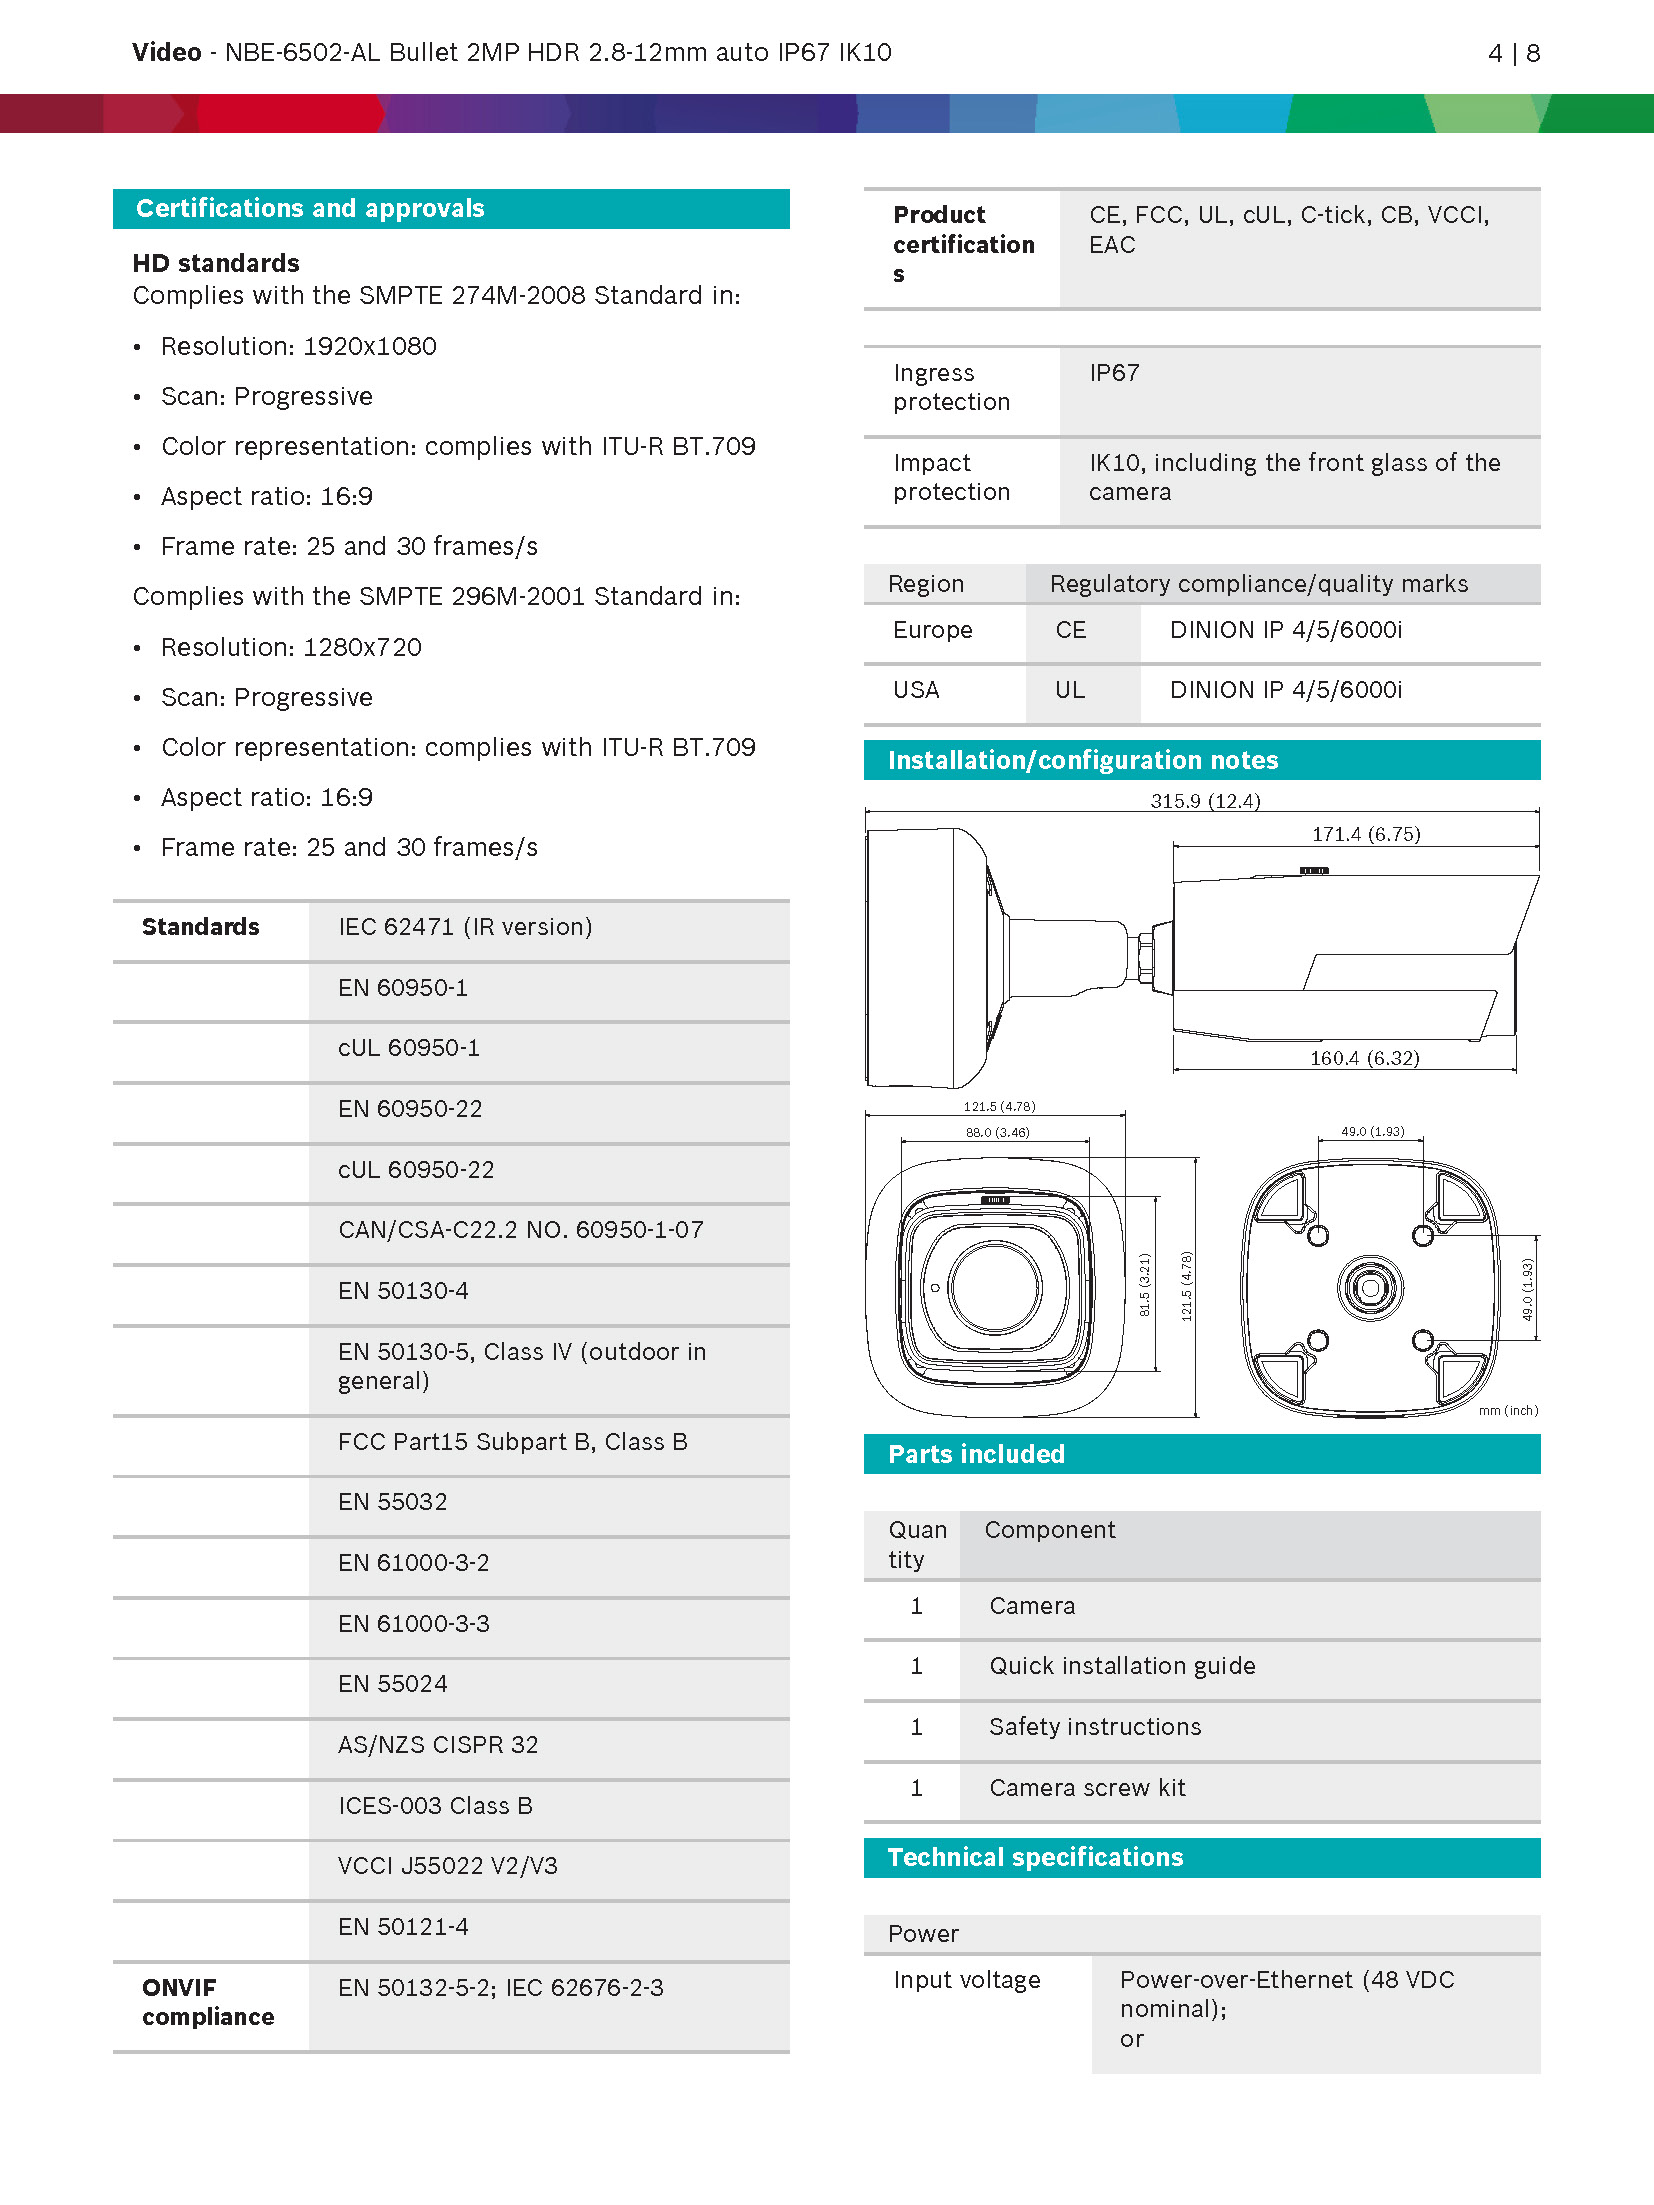 Bosch IP 6000i Camera Spec 01